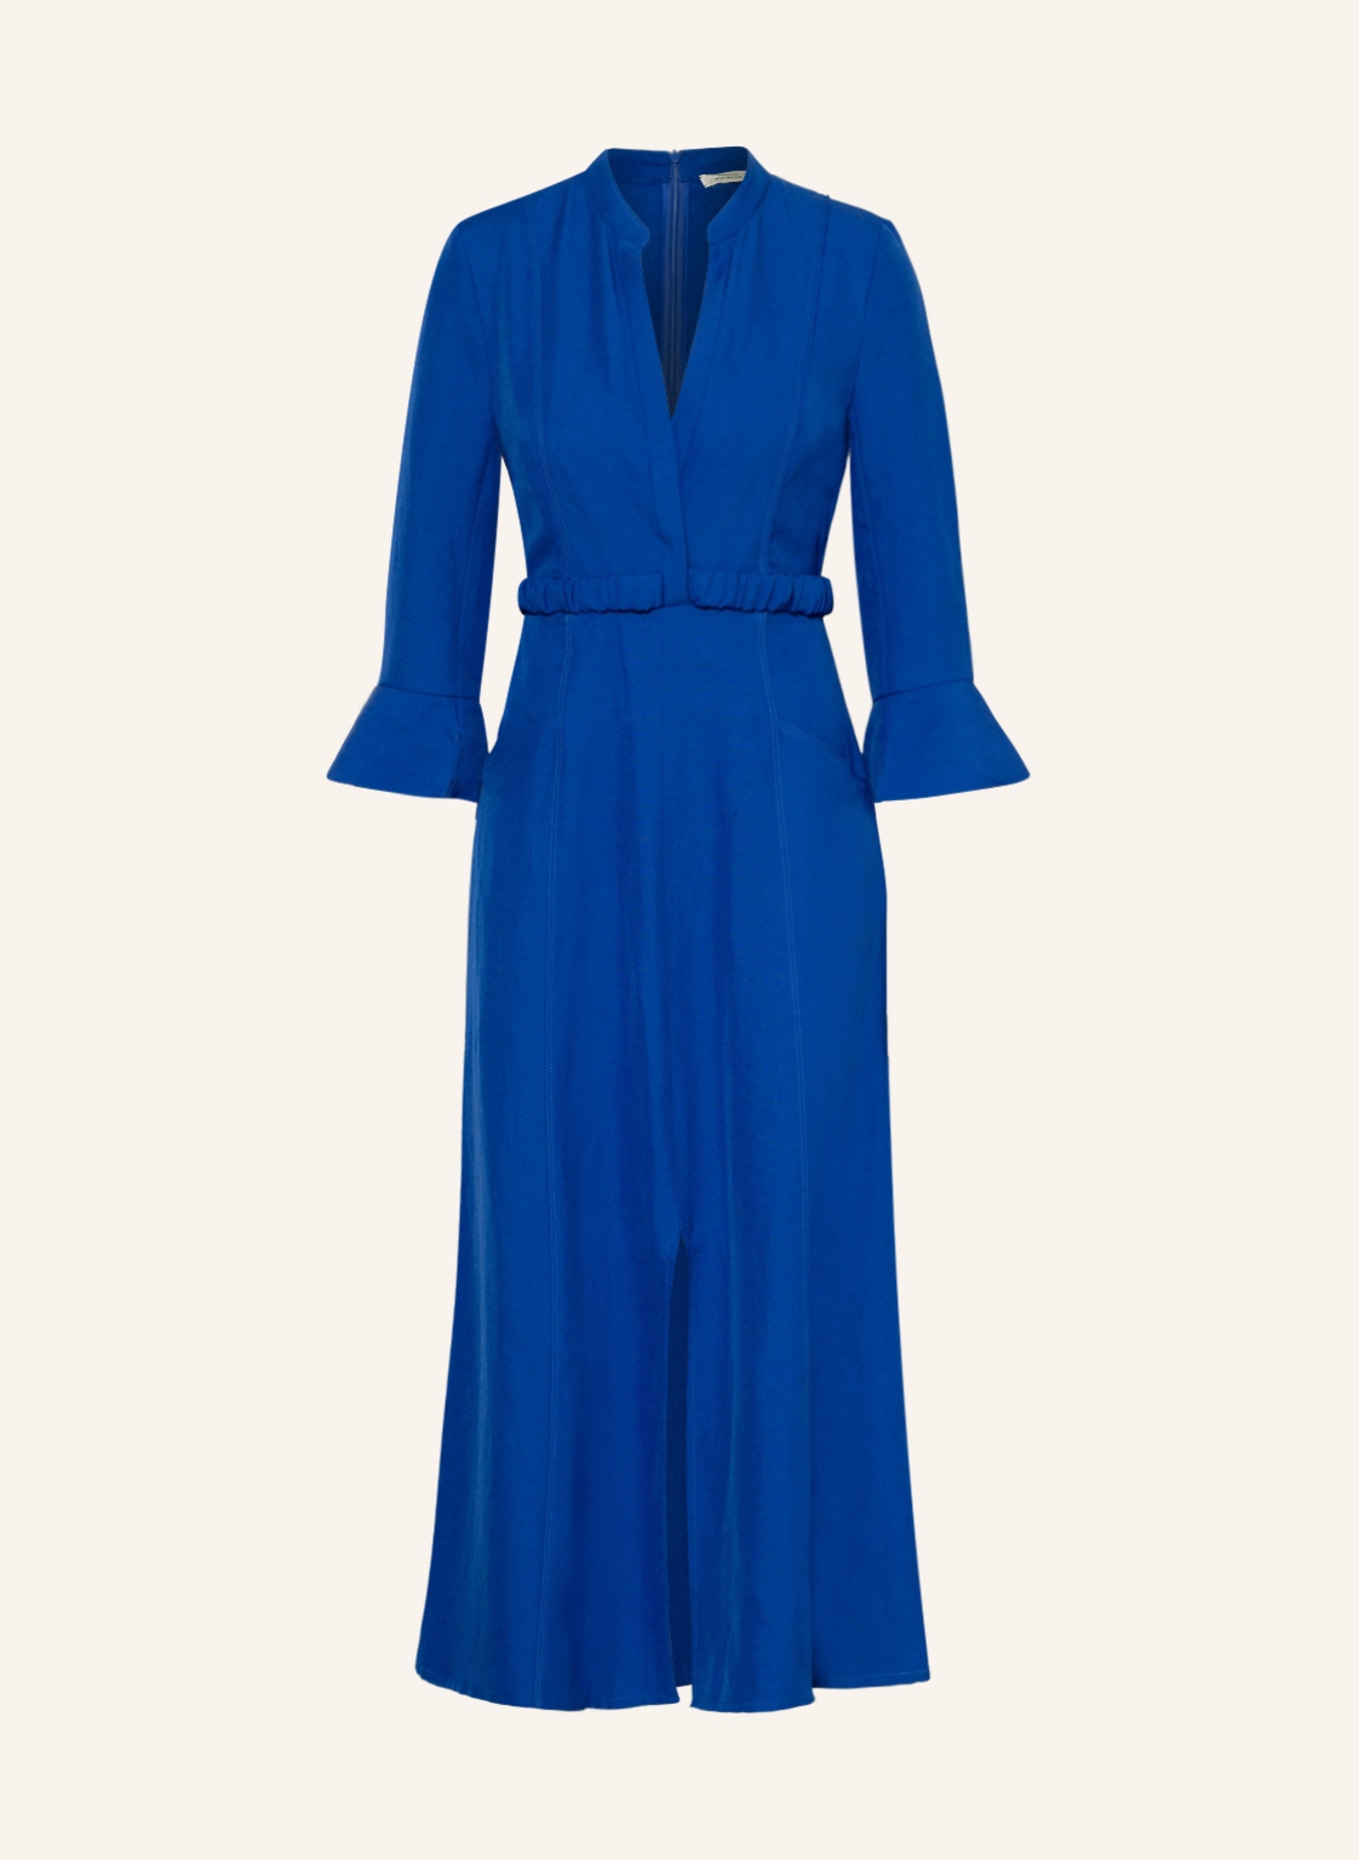 DOROTHEE SCHUMACHER Kleid mit Leinen und Cut-outs, Farbe: BLAU (Bild 1)